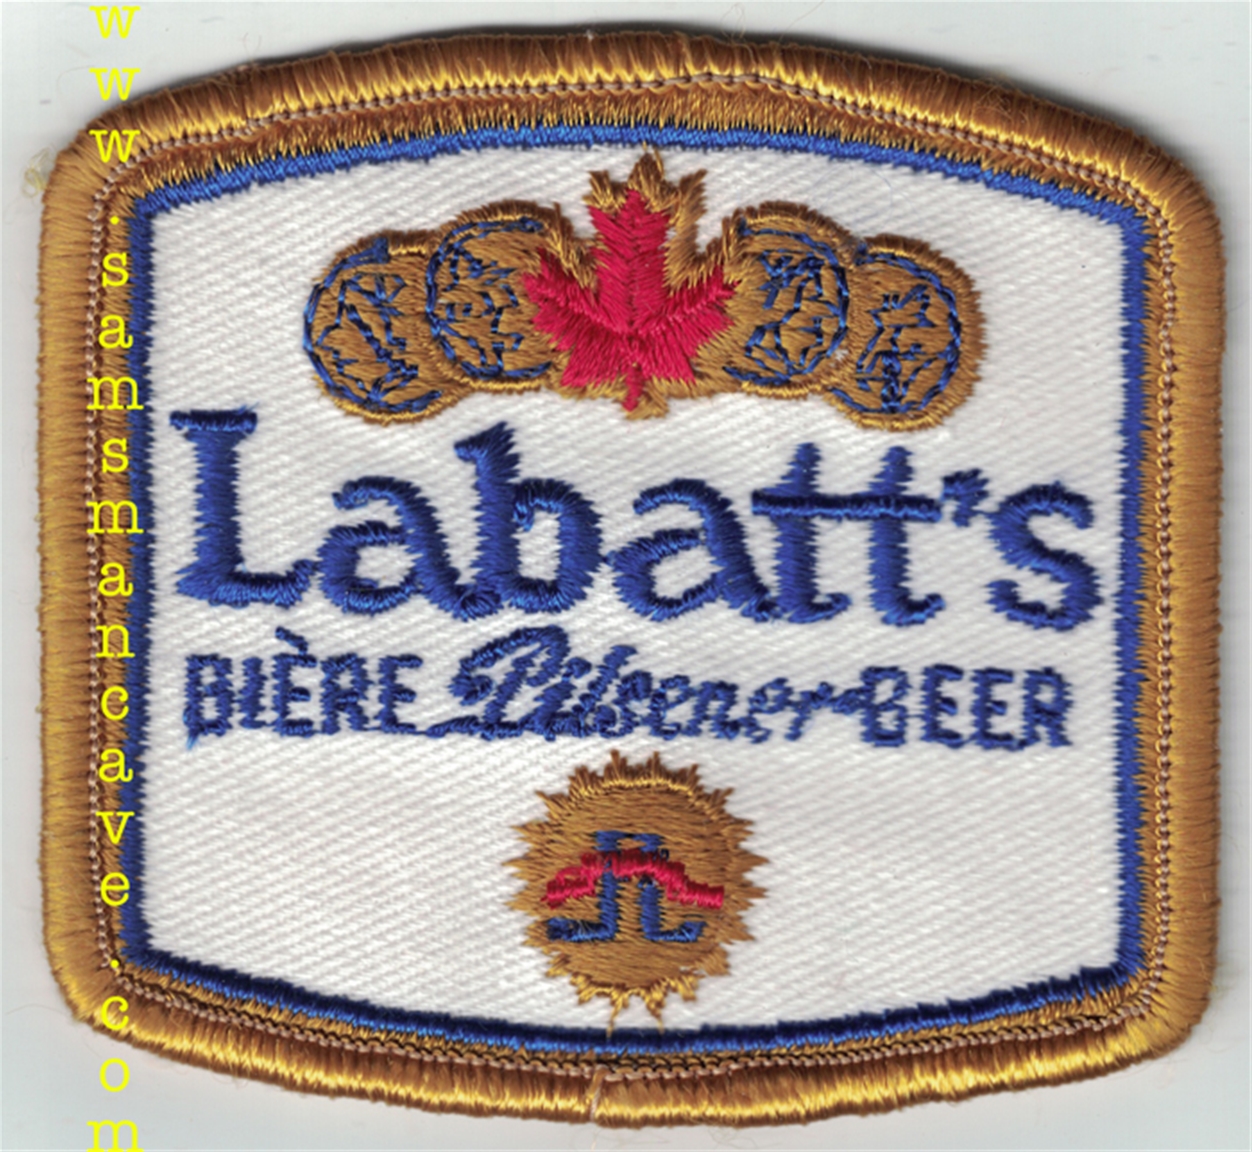 Labatt's Pilsener Beer Patch